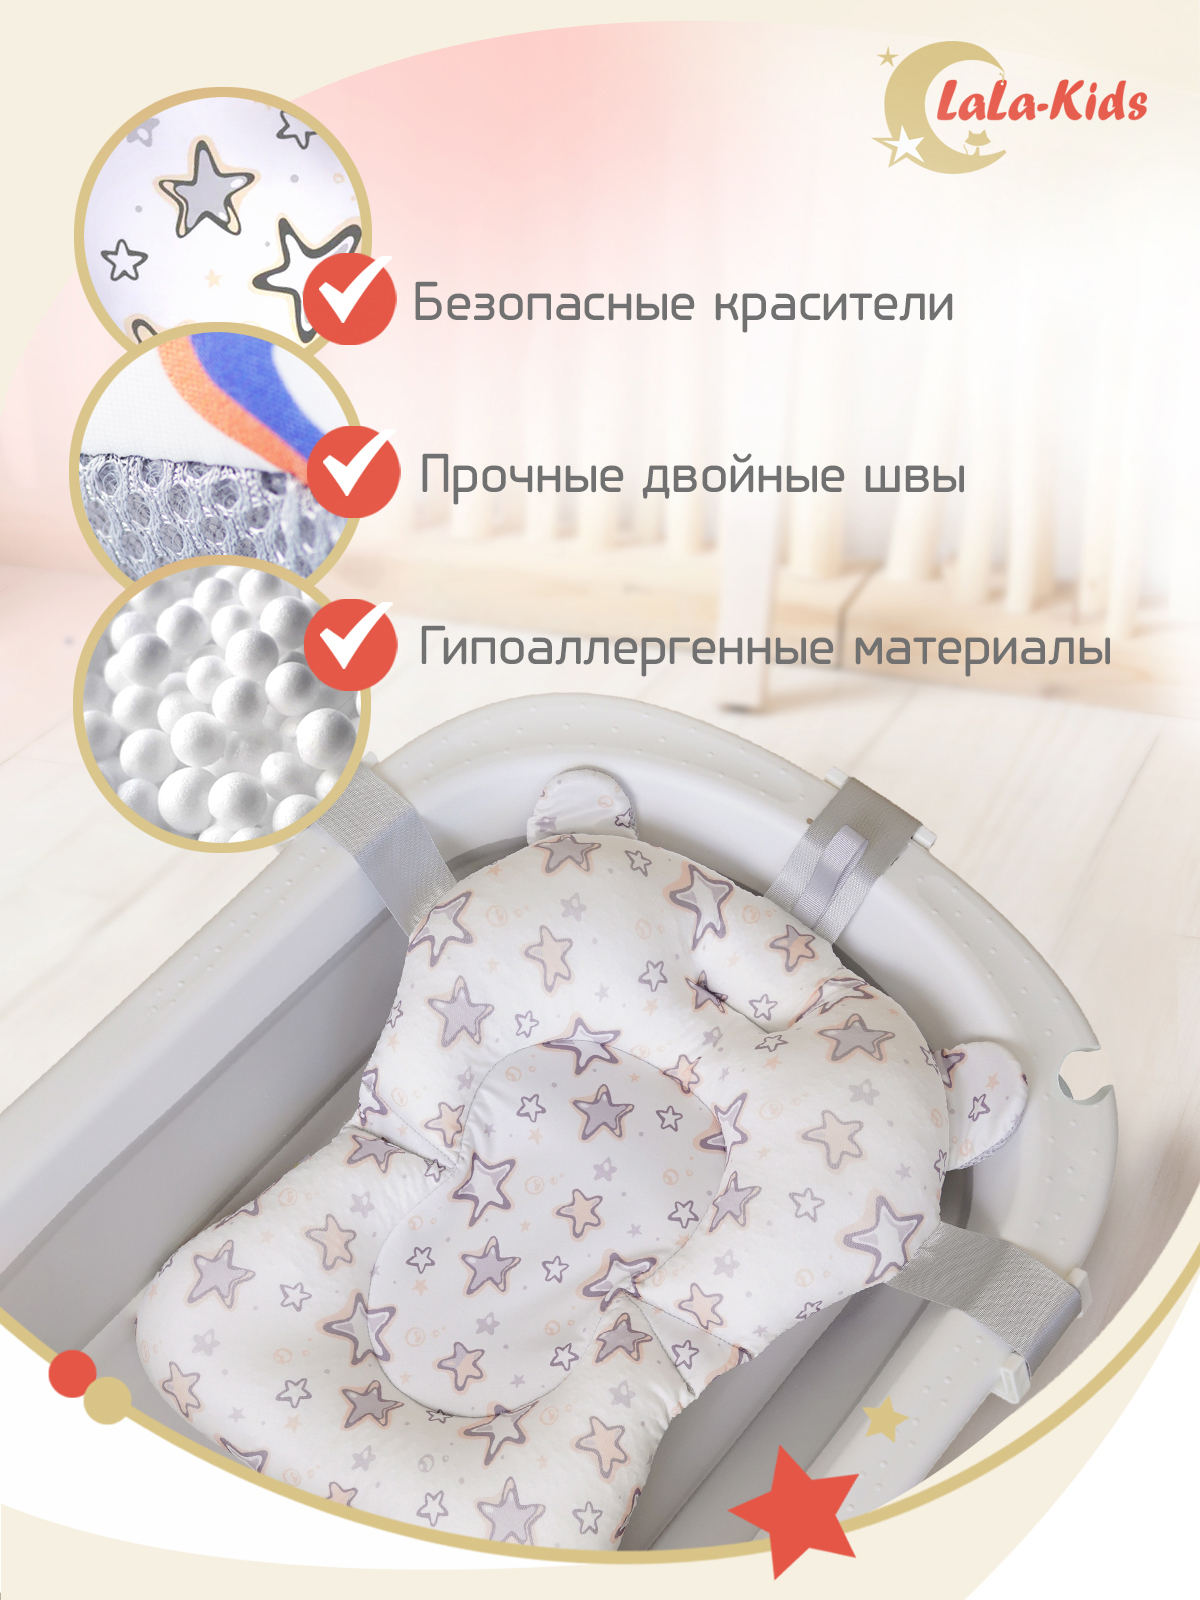 Детская ванночка с термометром LaLa-Kids складная с матрасиком песочным в комплекте - фото 15